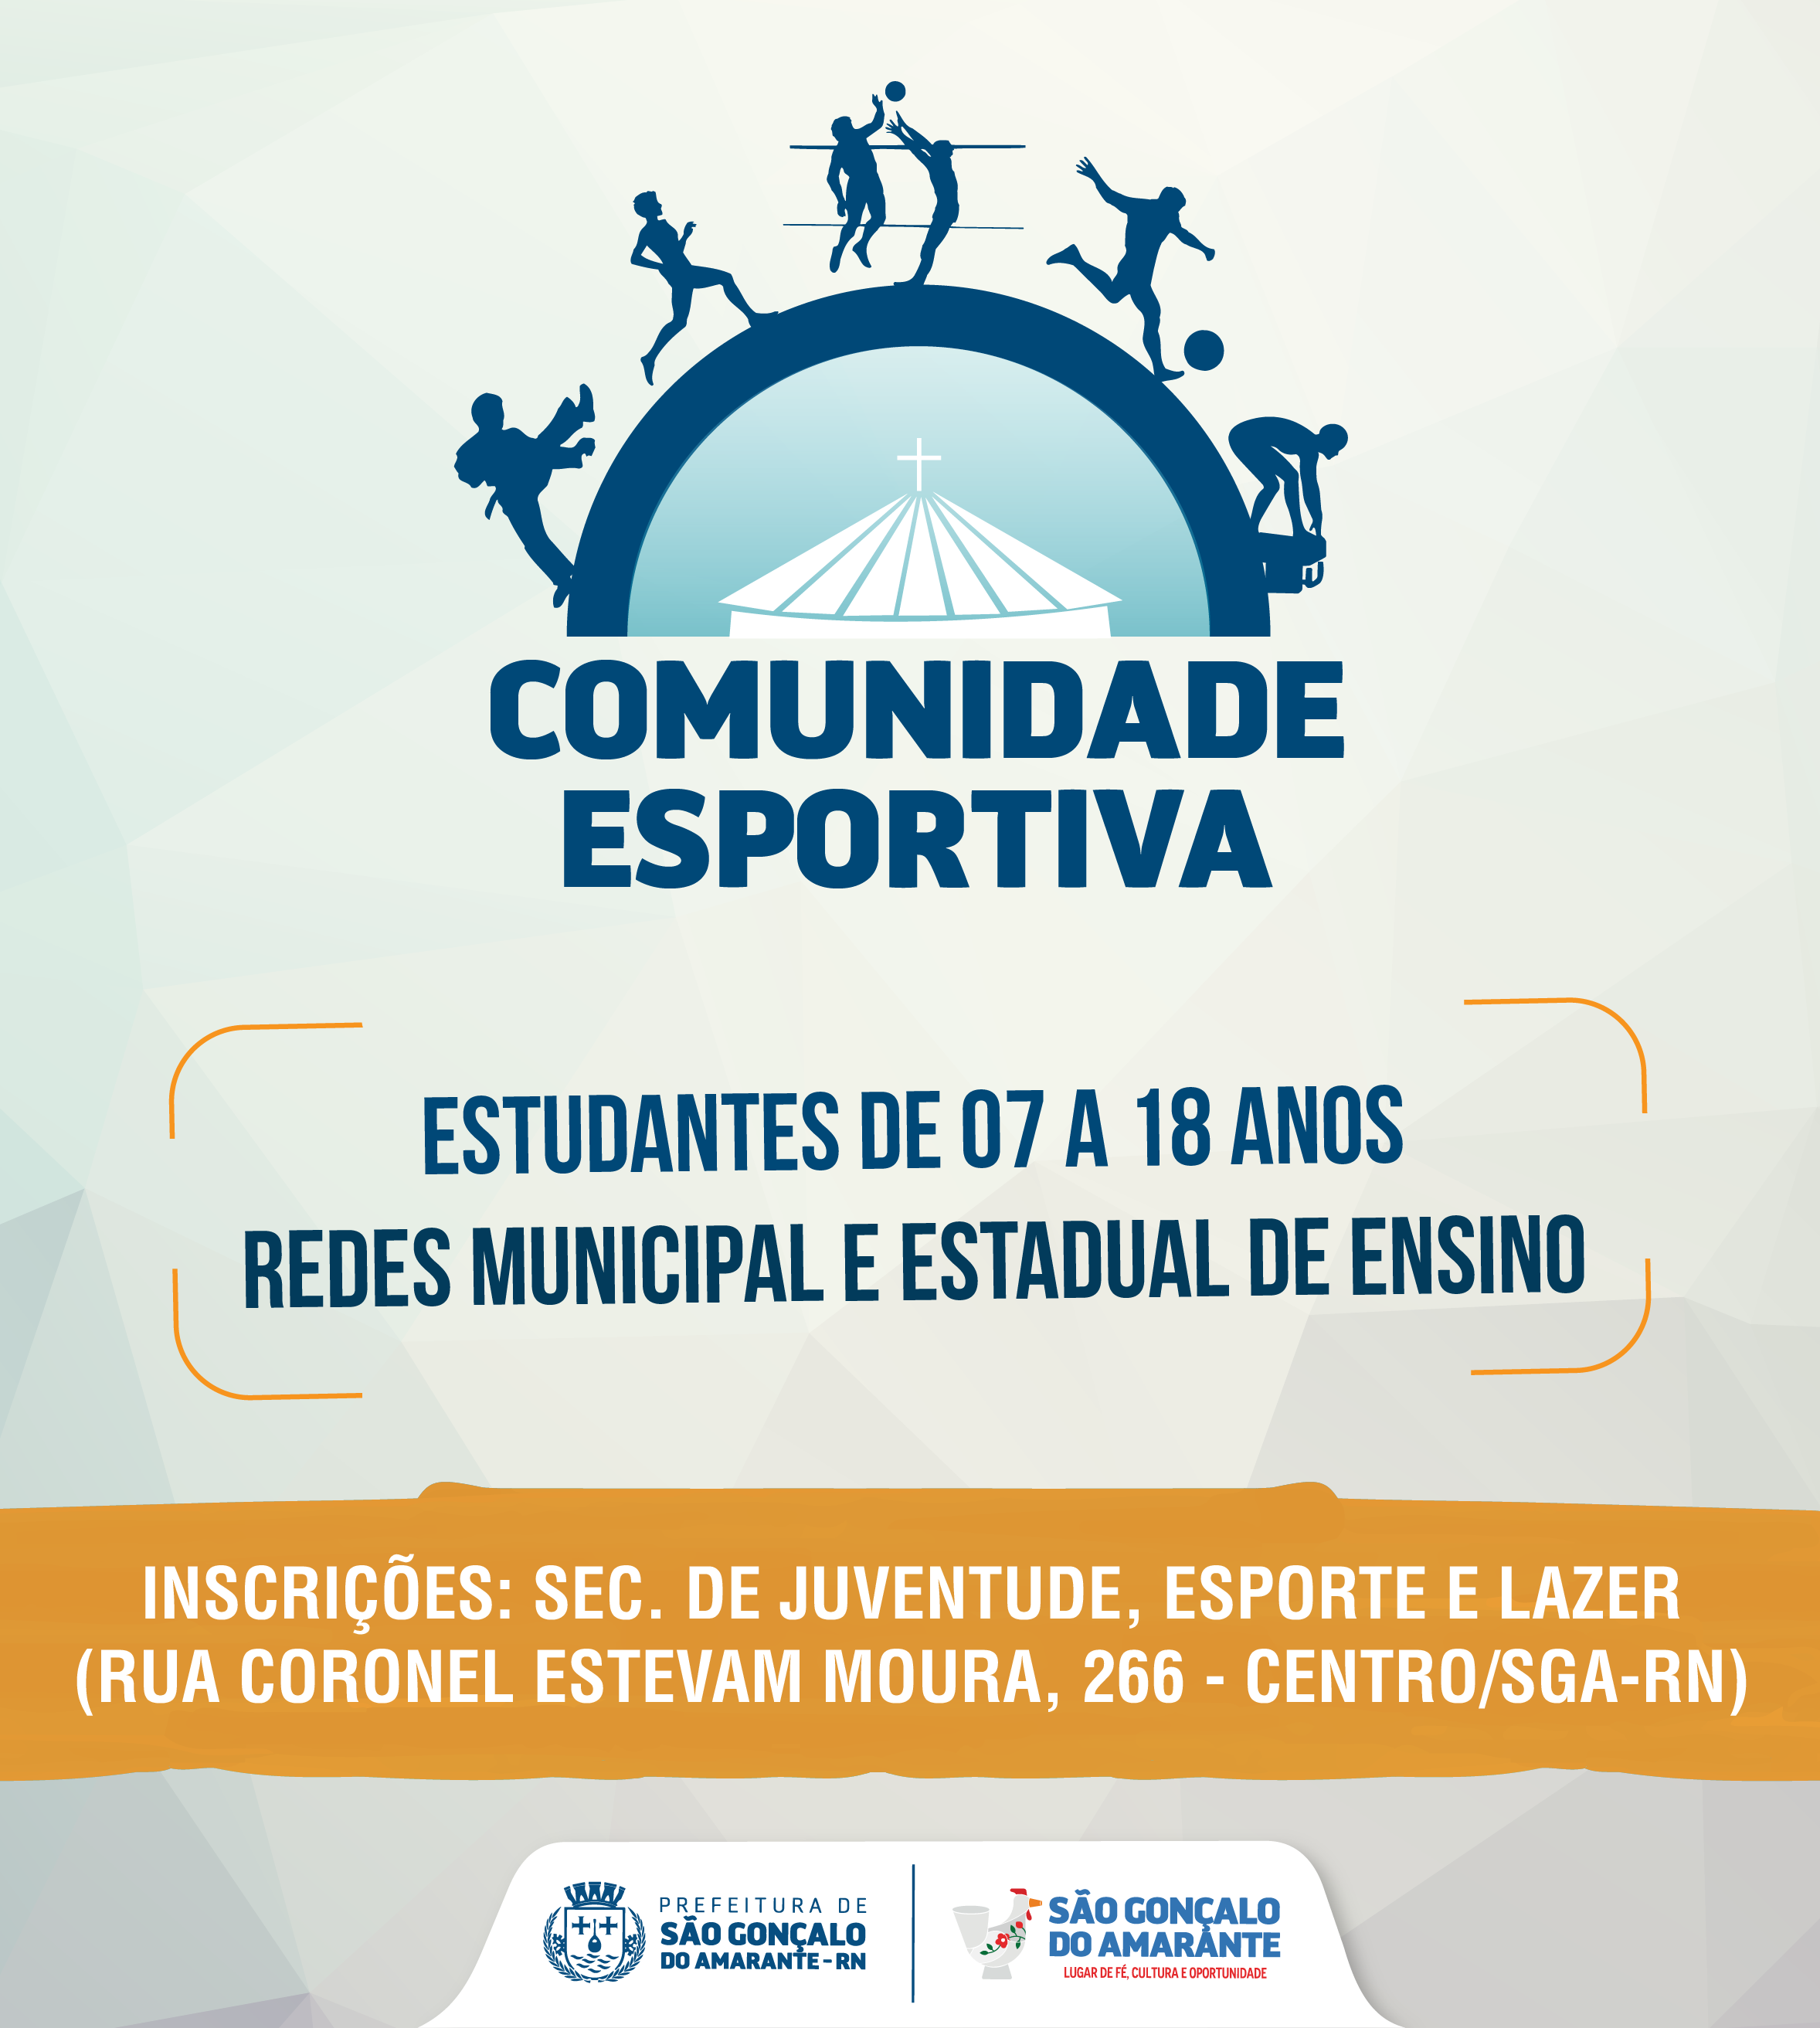 Comunidade Esportiva vai patrocinar projetos sociais em São Gonçalo